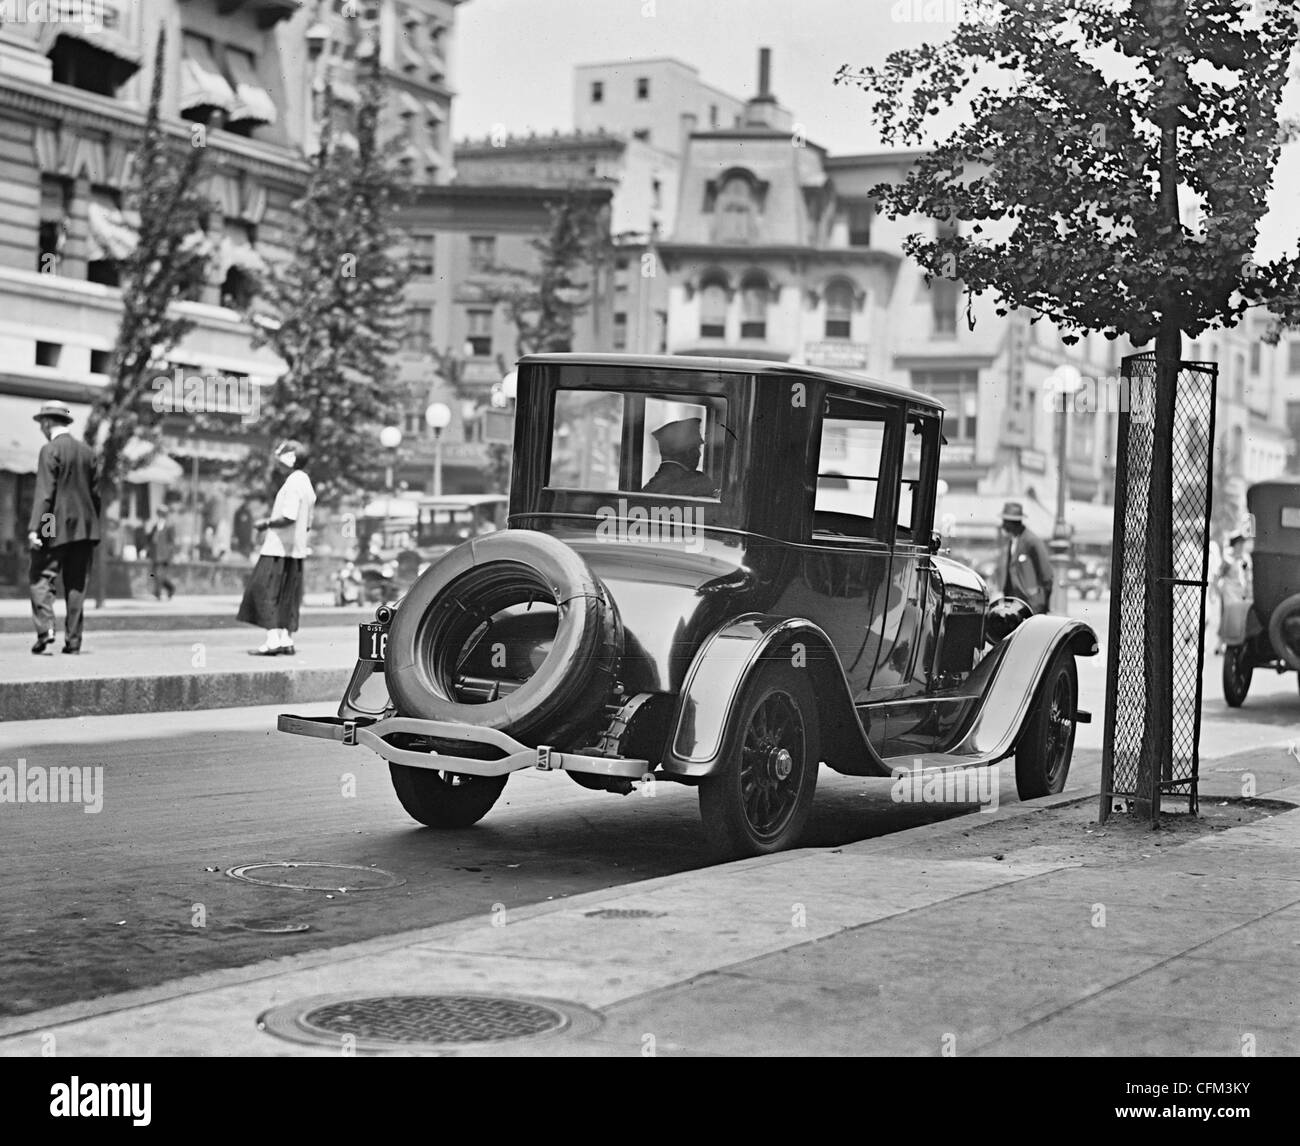 Escena callejera, vista trasera del automóvil, Washington, D.C., circa 1924 Foto de stock